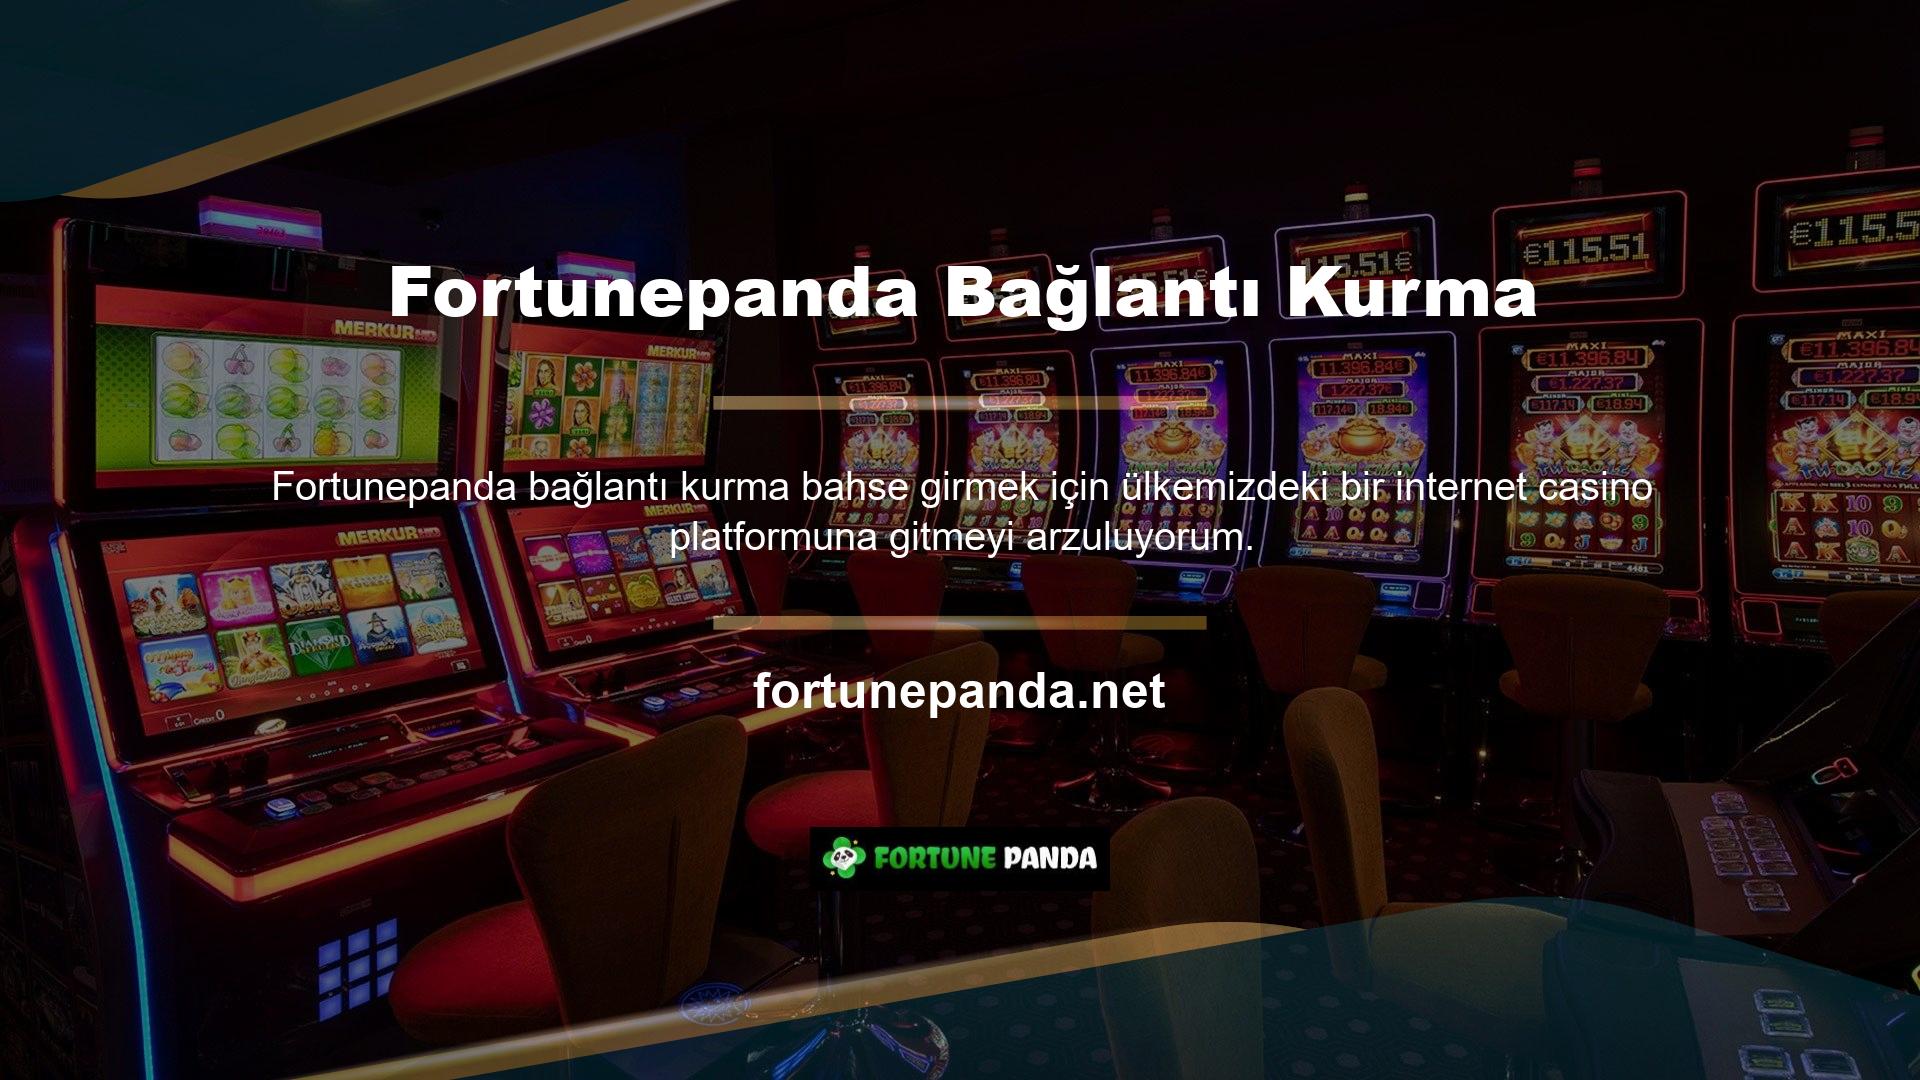 Fortunepanda casinosunda casino oynayarak çok para kazanabilirsiniz